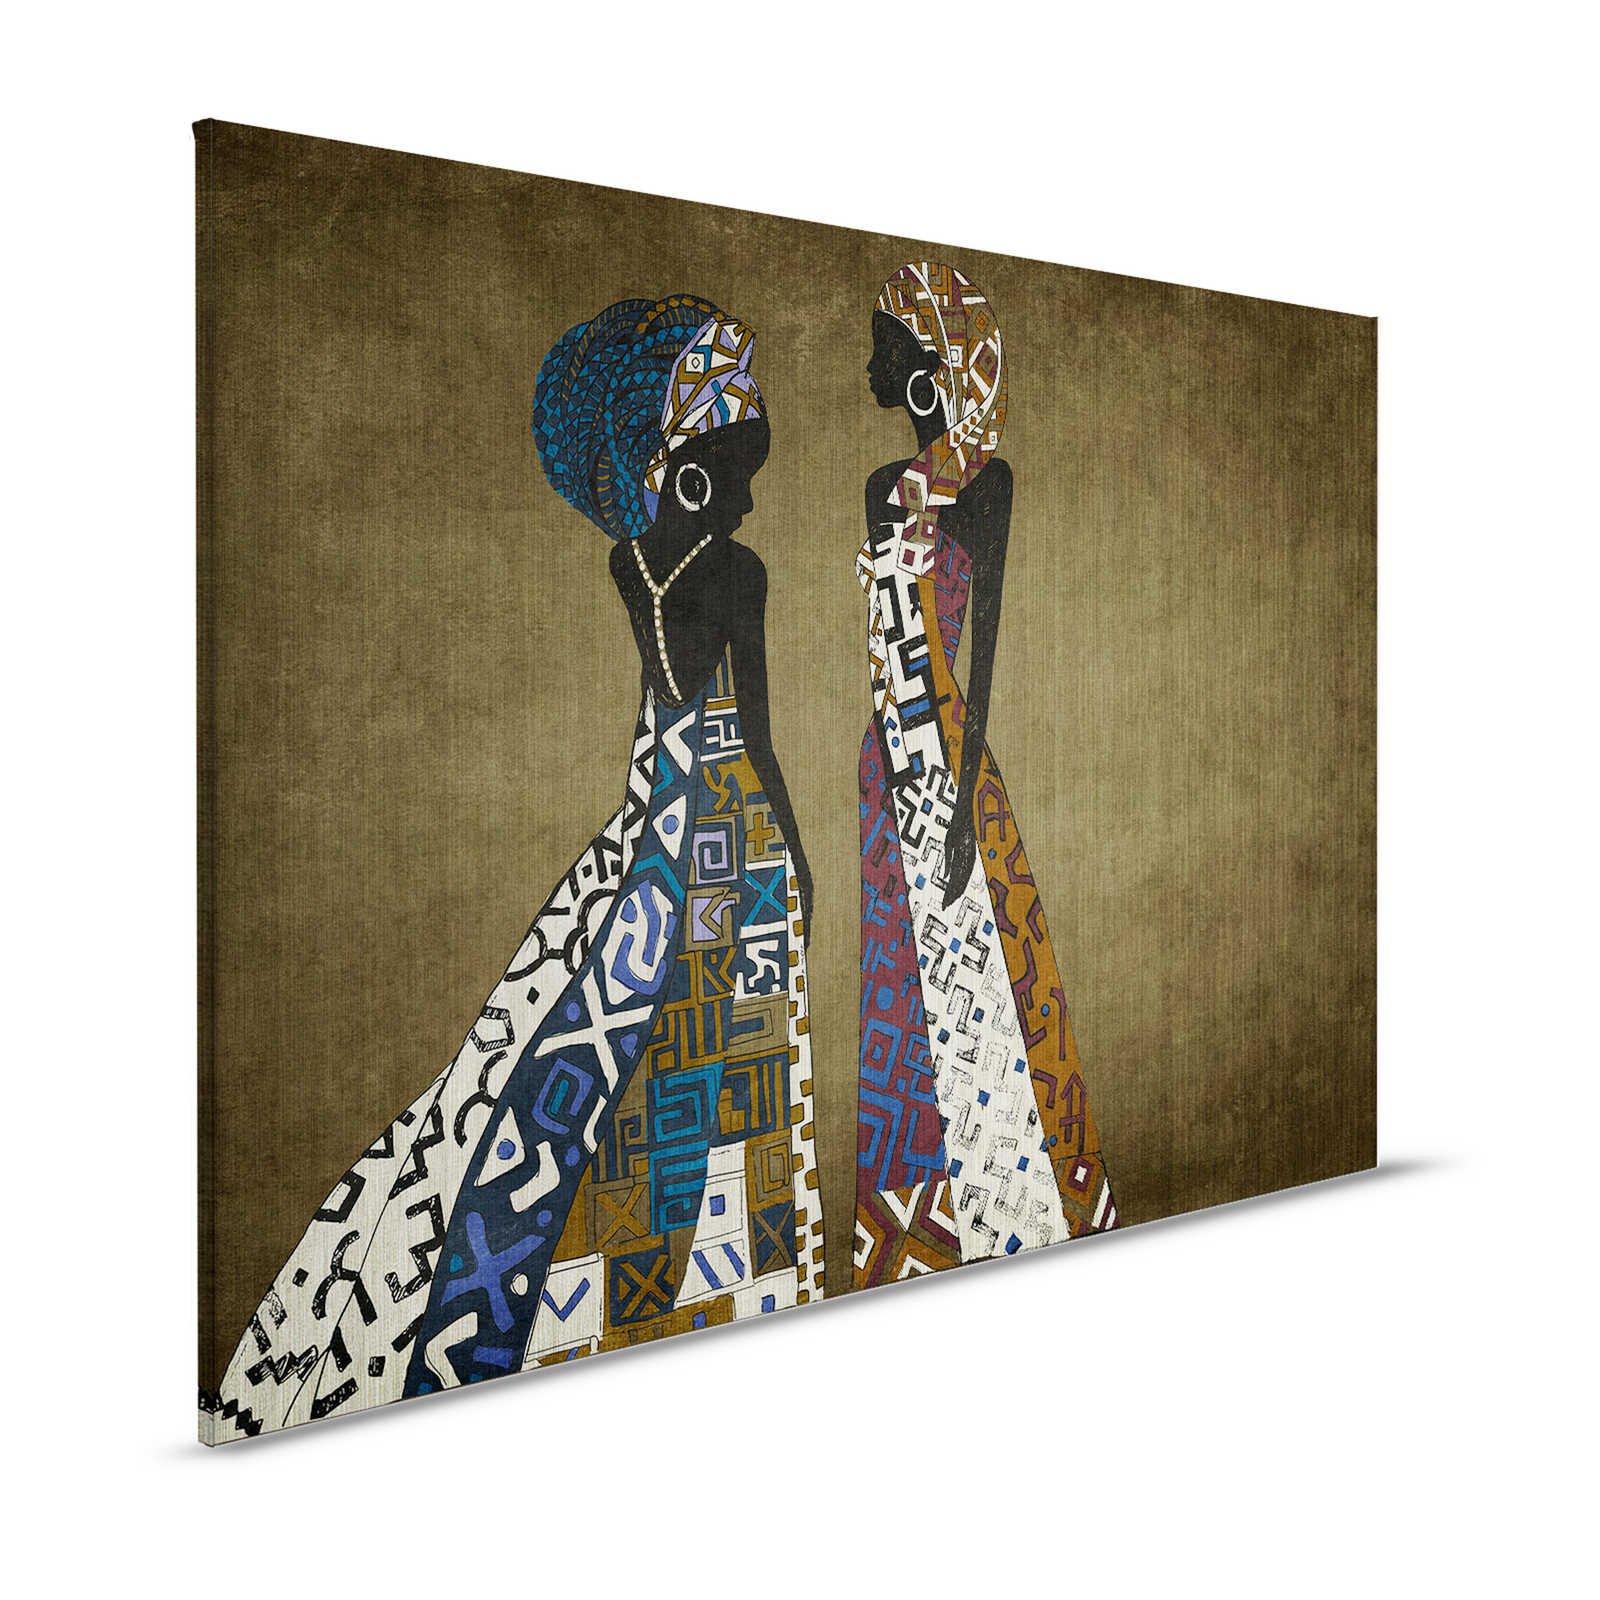 Nairobi 3 - Afrika Canvas schilderij Jurk Design met Ethno Patroon - 1,20 m x 0,80 m
